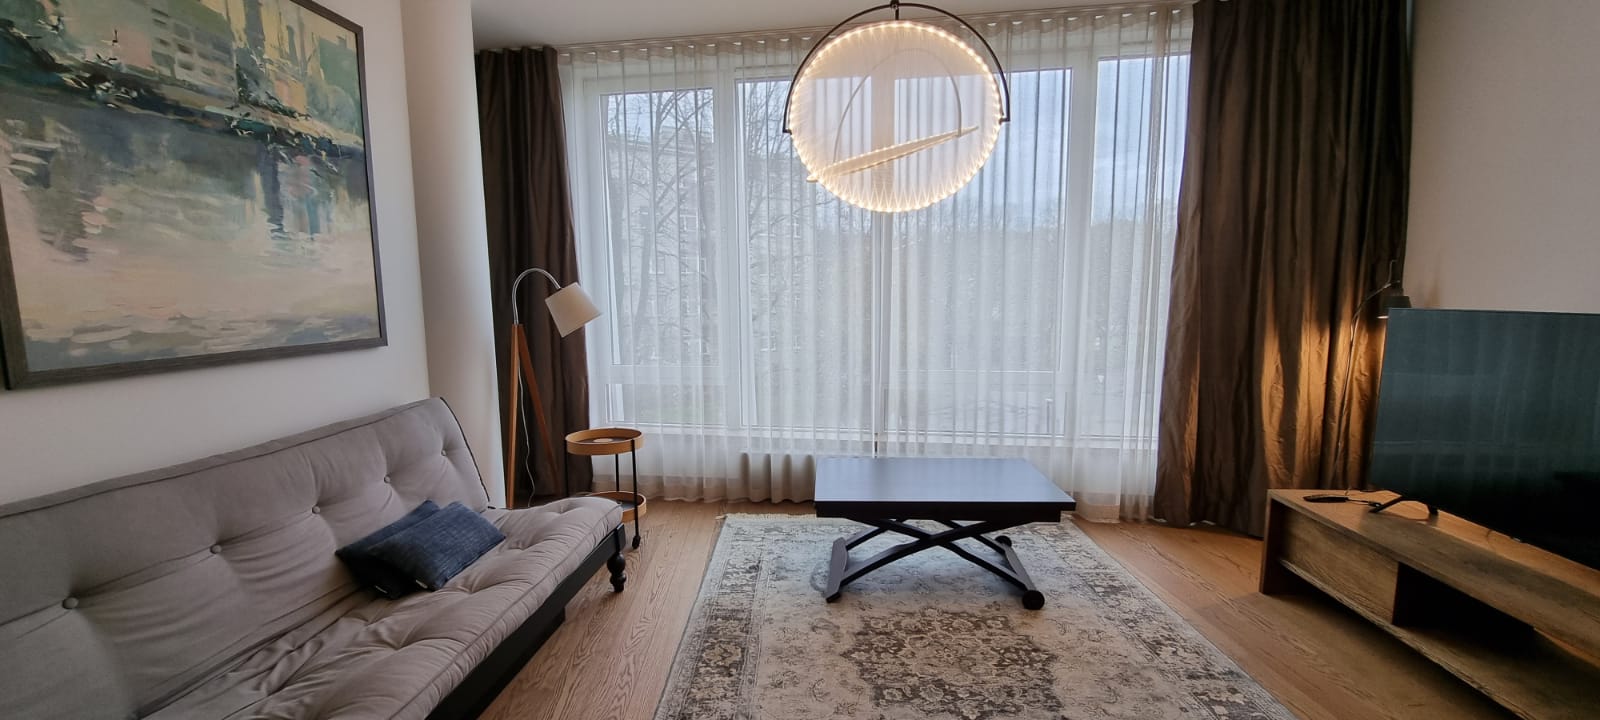 Populārajā dzīvojamo māju kompleksā Centranams tiek pardots elegants, nesen izremontēts dzīvoklis